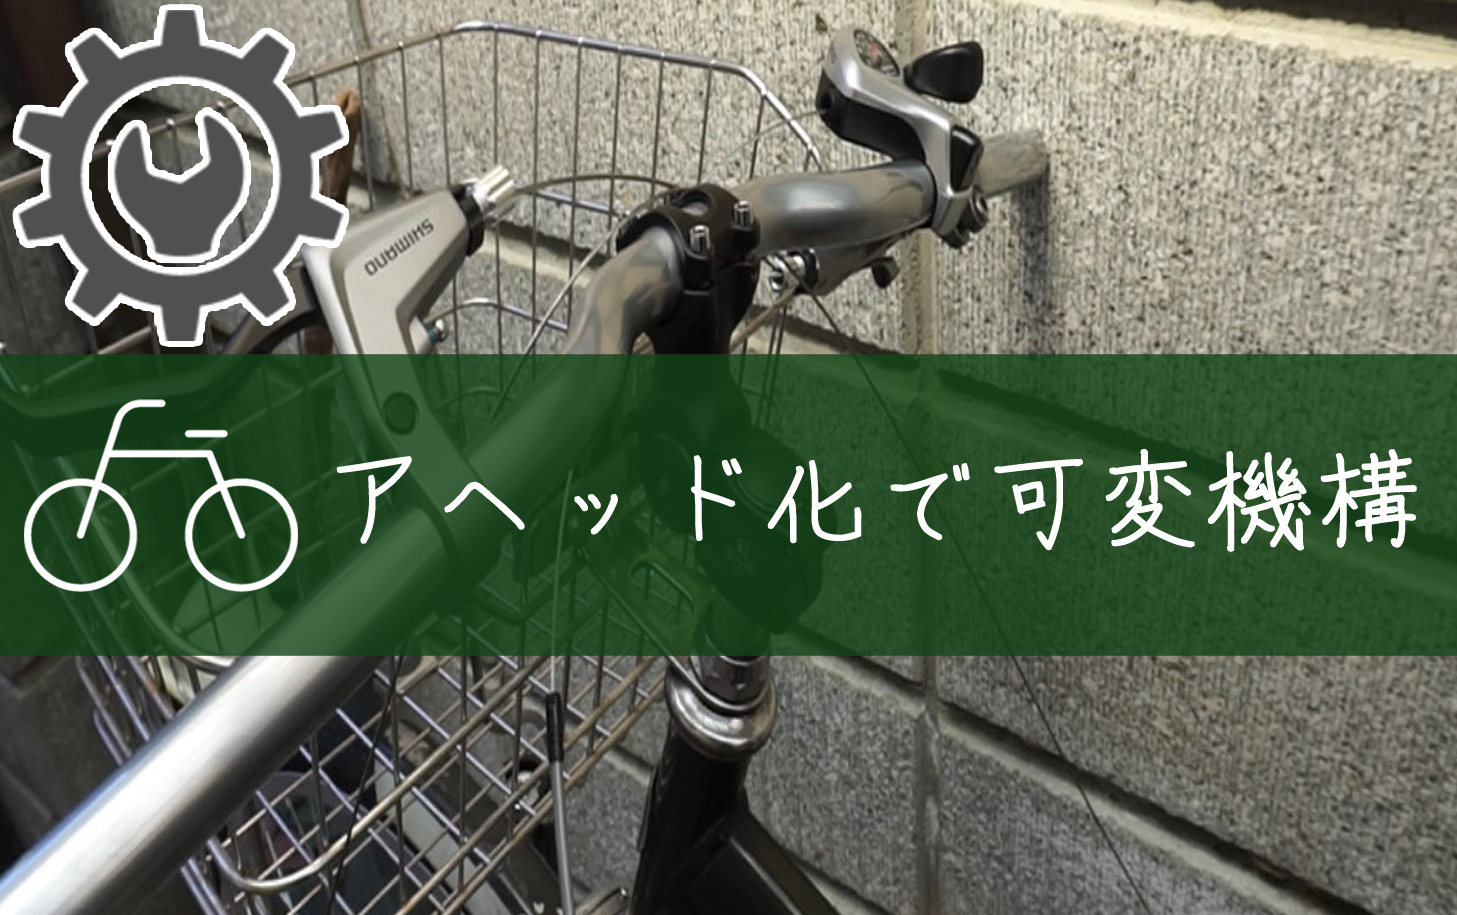 シティサイクル自転車の「ハンドルをアヘッド化して可変できるカスタム」